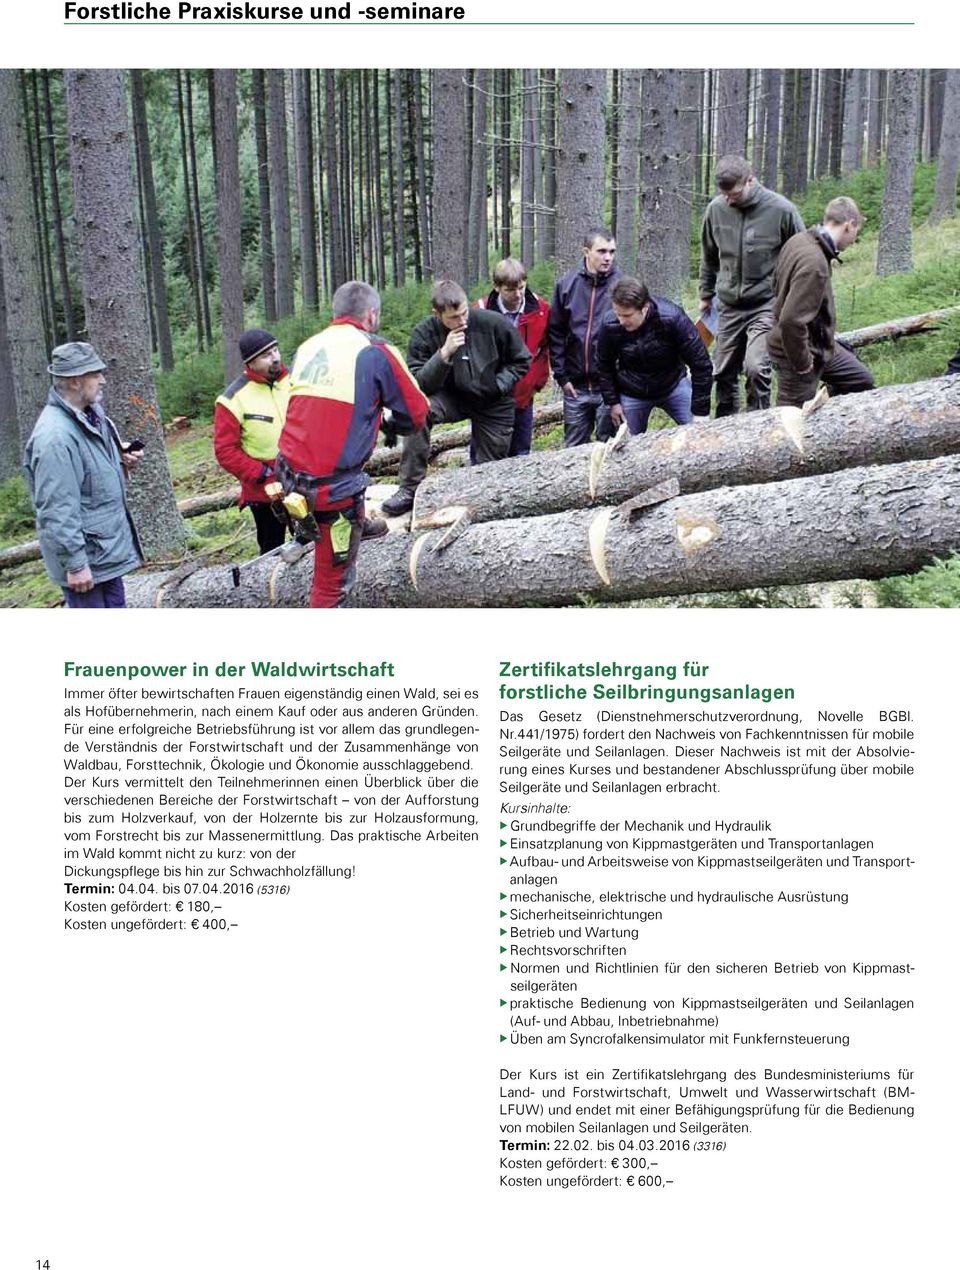 Der Kurs vermittelt den Teilnehmerinnen einen Überblick über die verschiedenen Bereiche der Forstwirtschaft von der Aufforstung bis zum Holzverkauf, von der Holzernte bis zur Holzausformung, vom